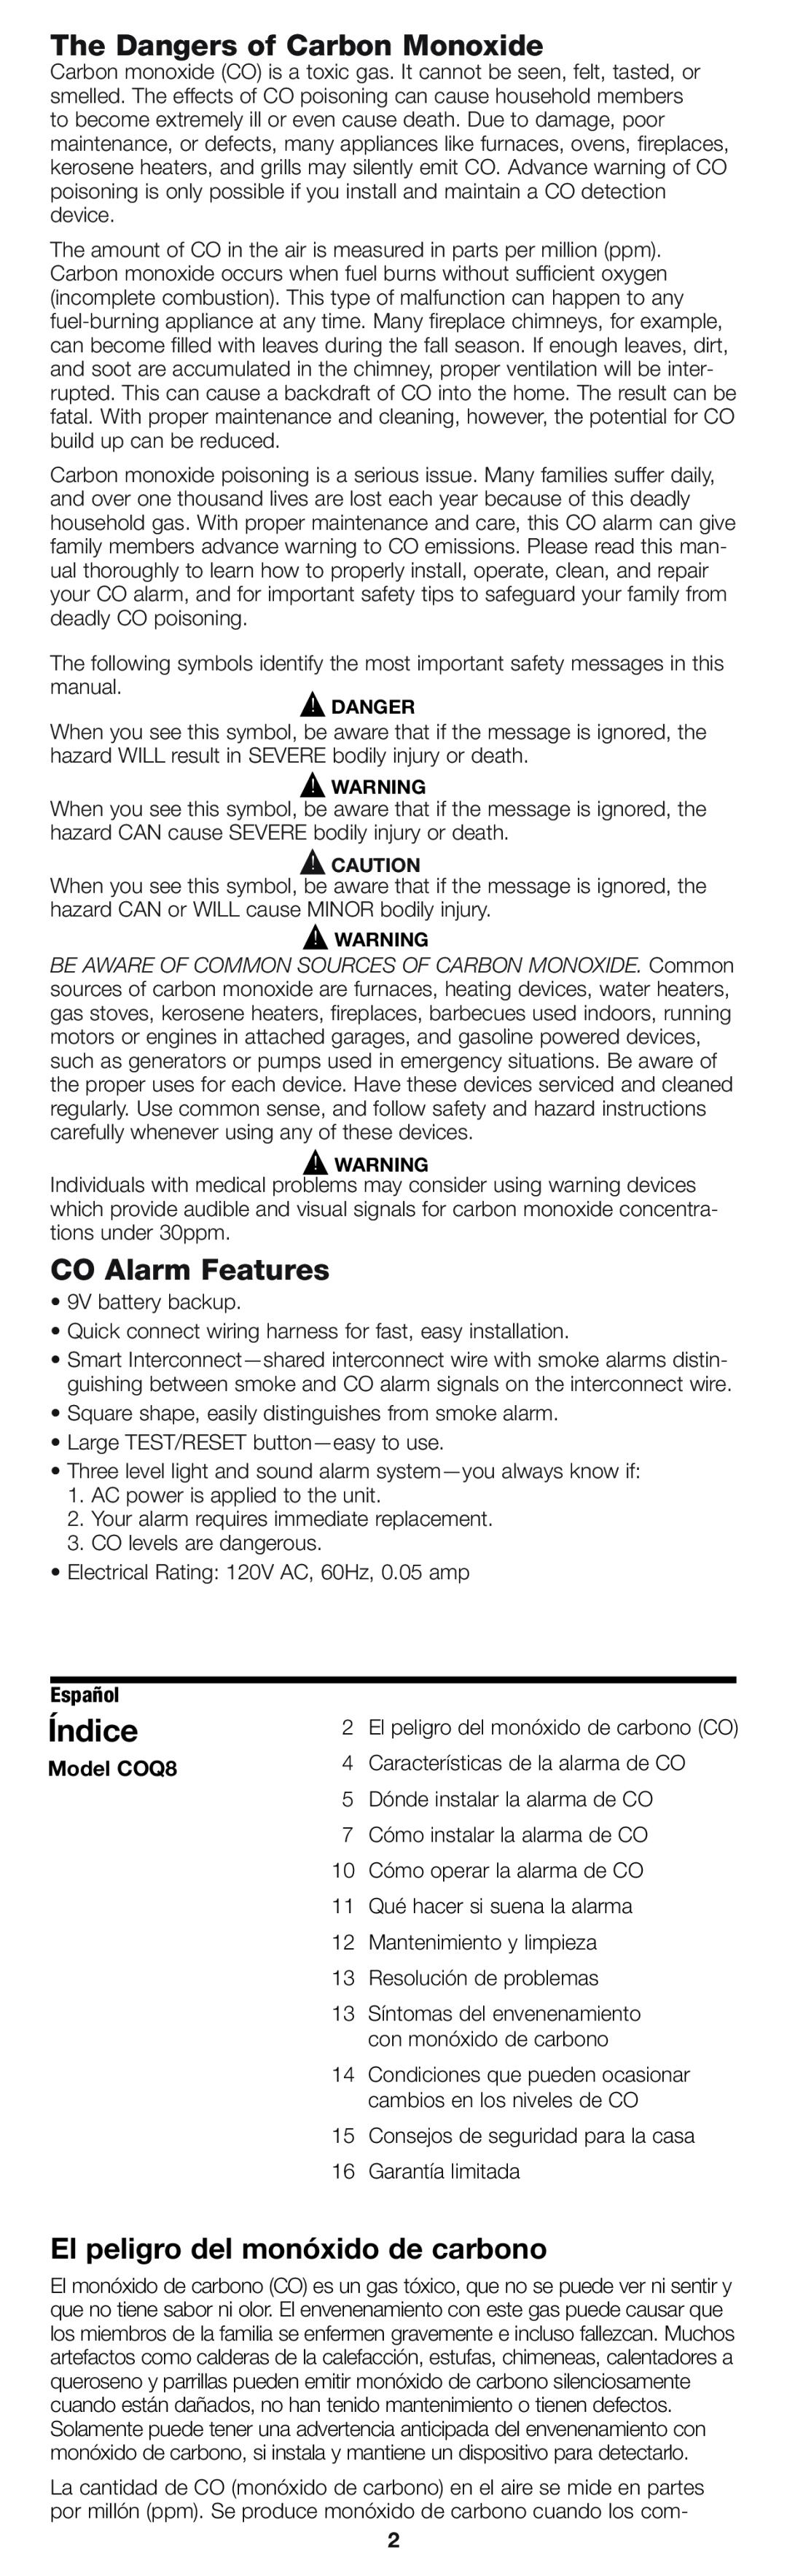 Firex pmn Índice, The Dangers of Carbon Monoxide, CO Alarm Features, El peligro del monóxido de carbono, Model COQ8 